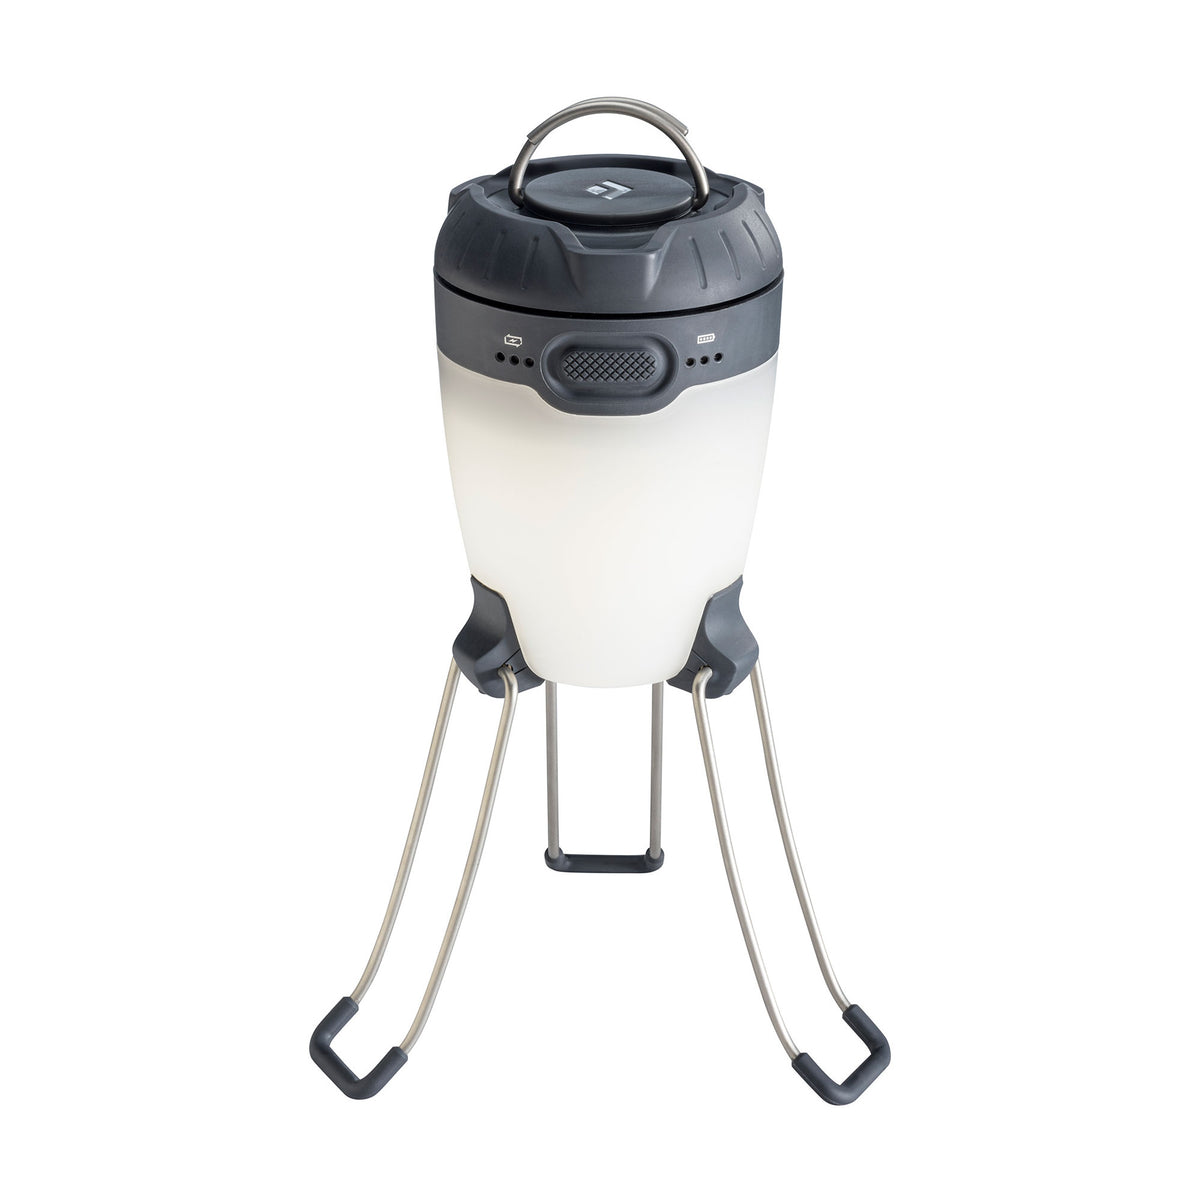 Black Diamond Apollo camping lantern, shown stood up on legs in black/white colours